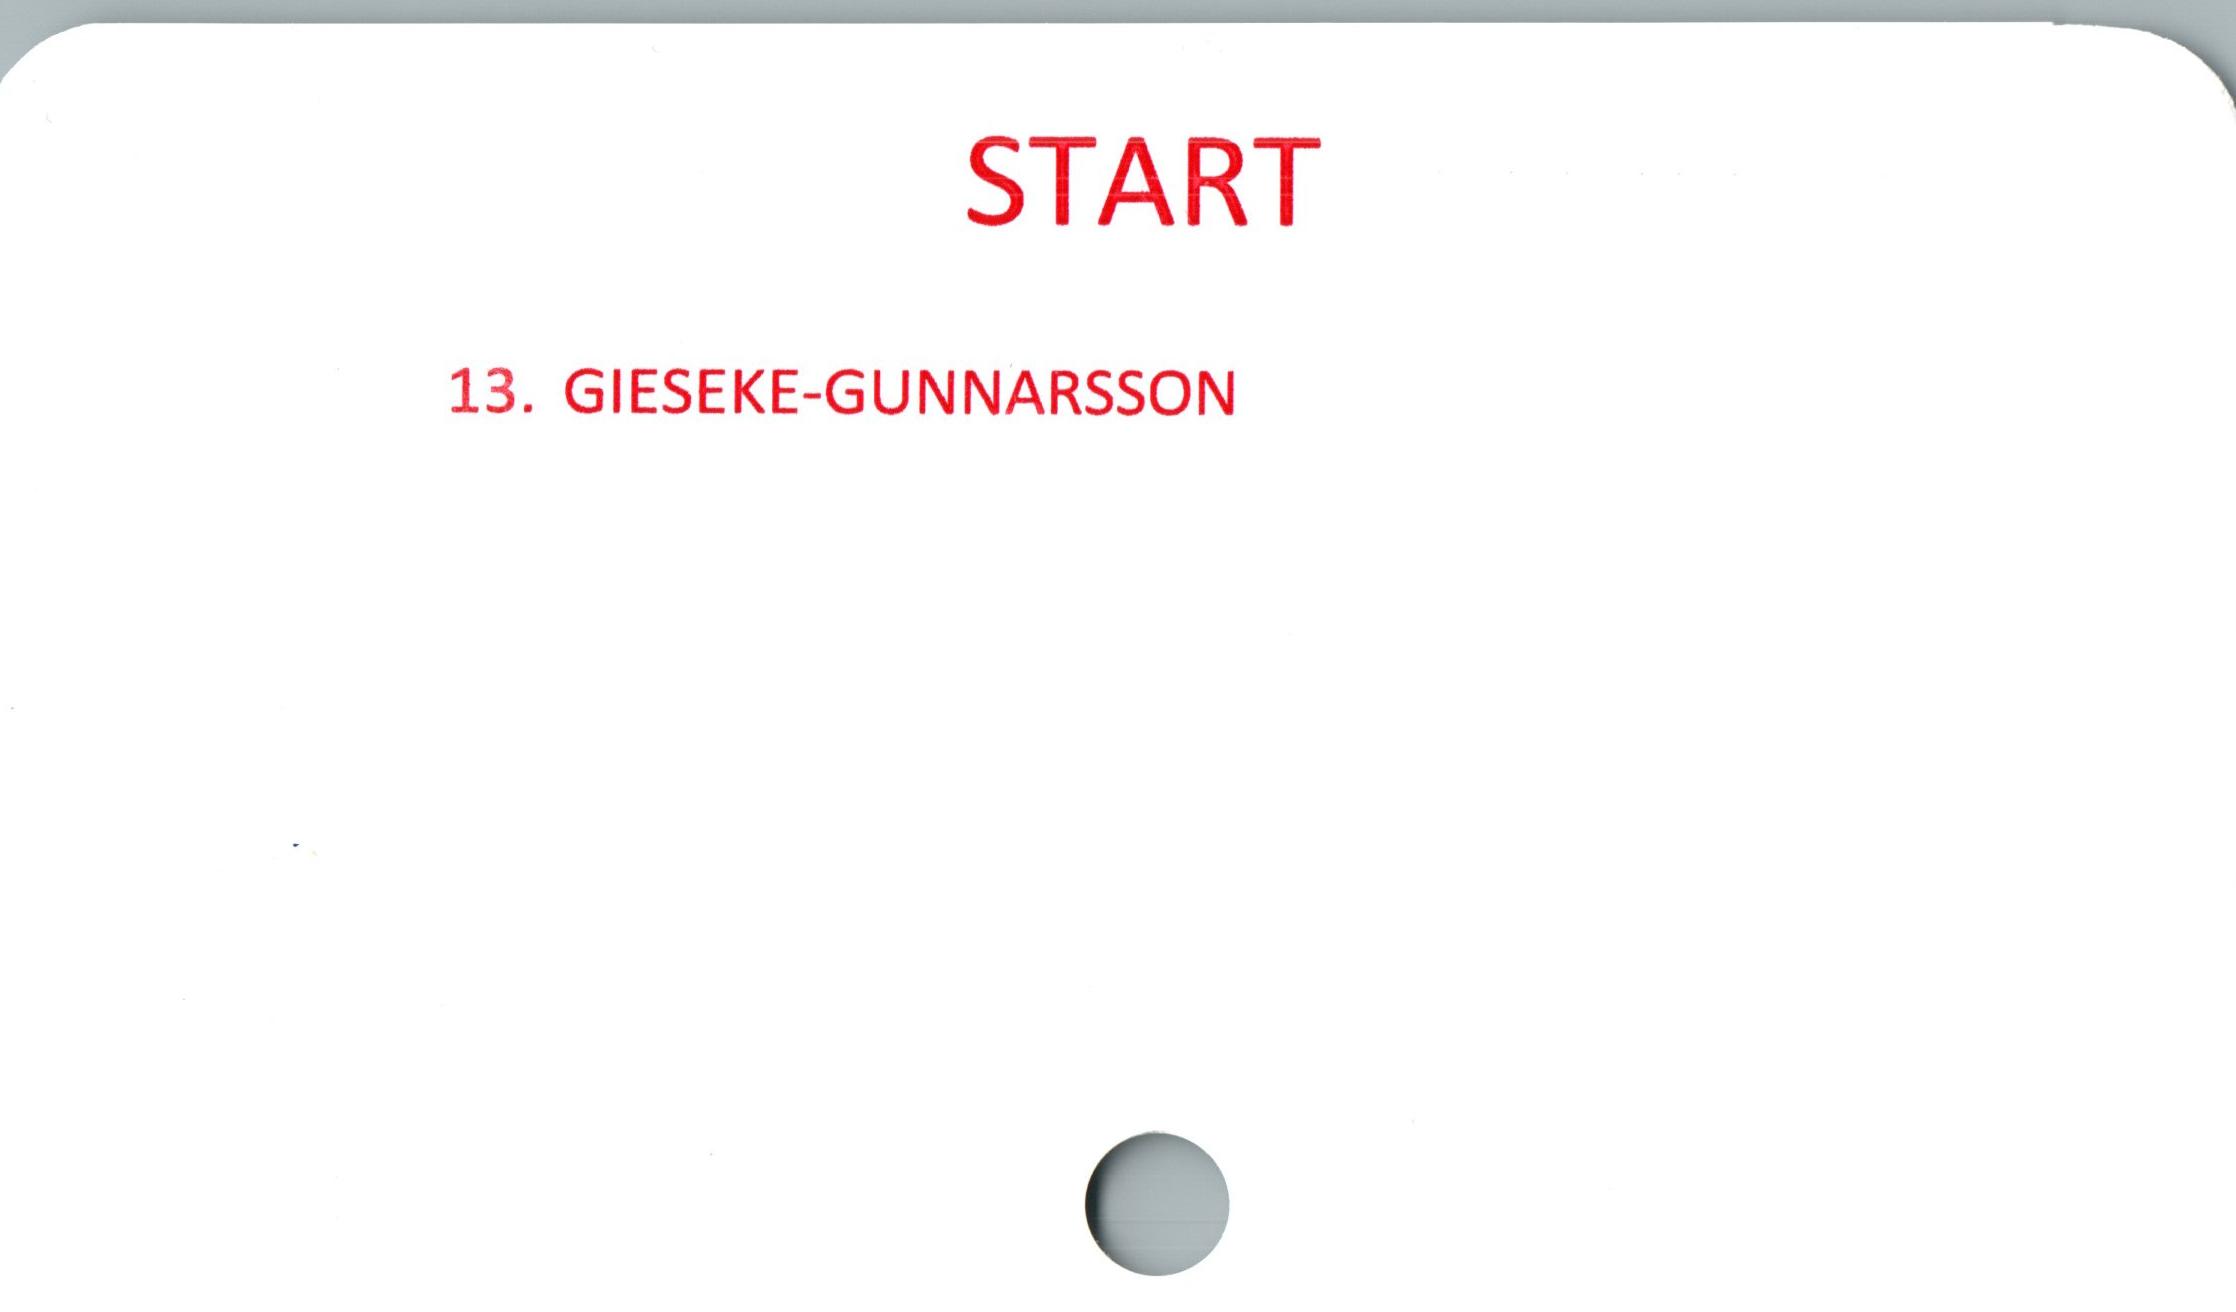  ﻿START

13. GIESEKE-GUNNARSSON